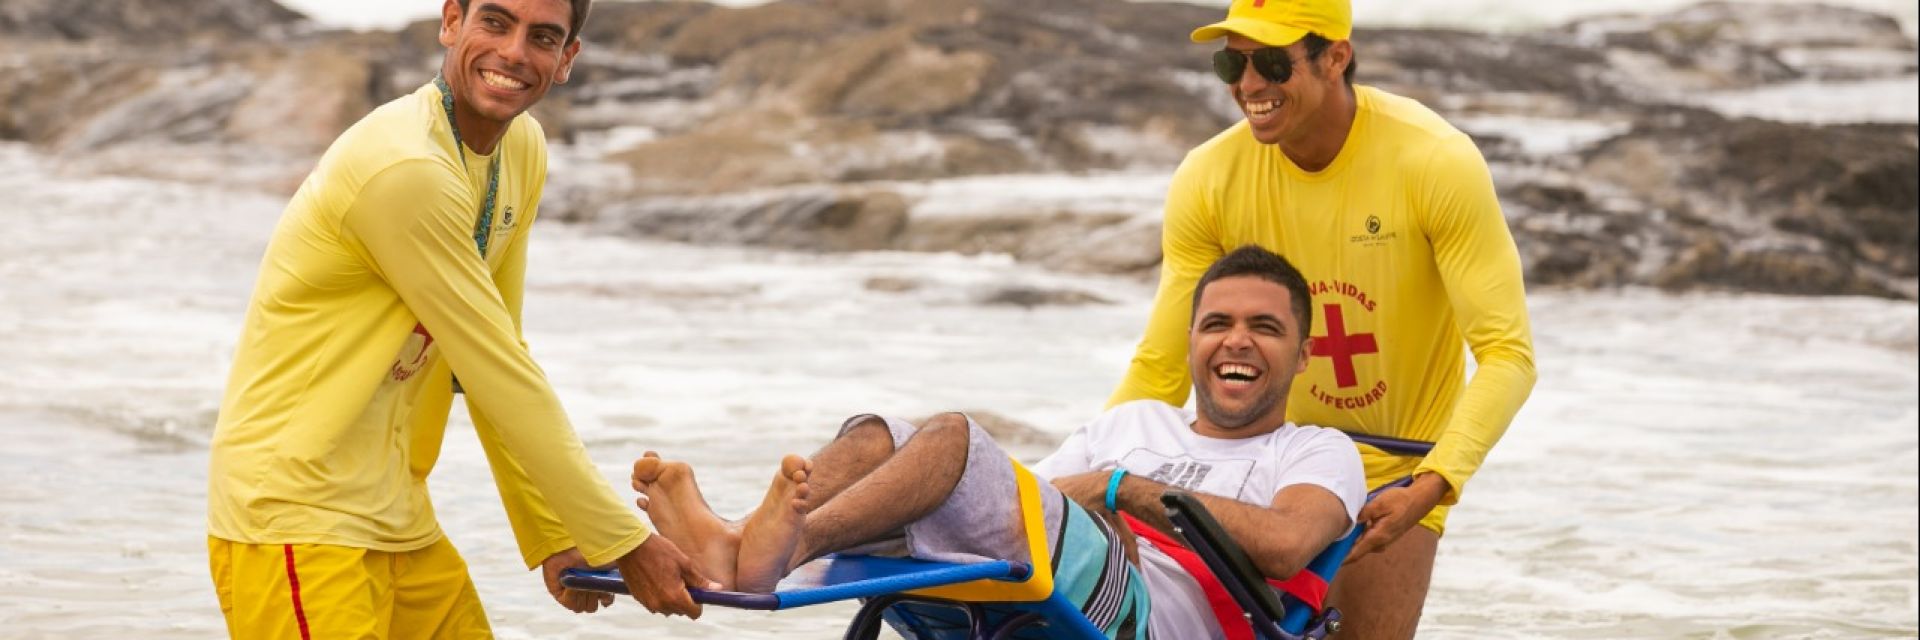 Acessibilidade para pessoas com deficiência no resort Costa do Sauípe